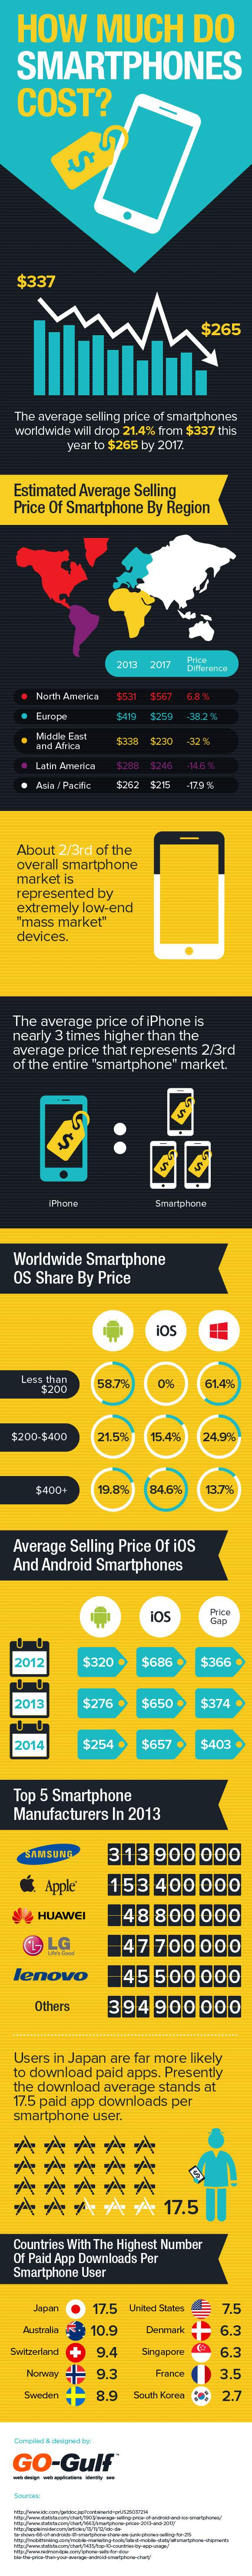 Smartphones Cost-Statistics And Trends